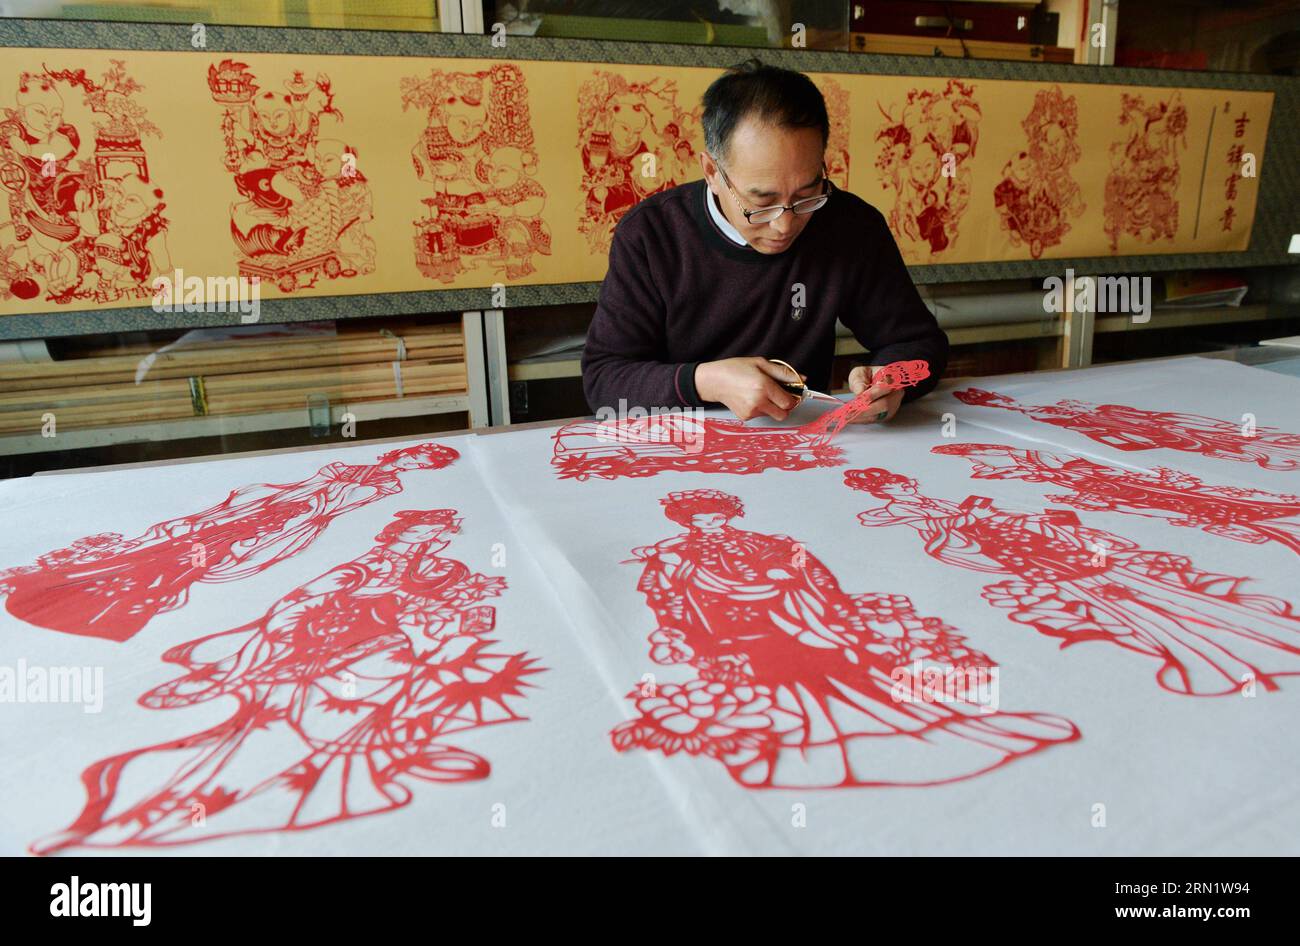 HEJIAN, 21. Januar 2015 -- der Volkskünstler Song Baoshu macht in Hejian City, nordchinesische Provinz Hebei, 21. Januar 2015. Mit einer Schere und etwas Papier können chinesische Handwerker Papierschnitte mit komplexen Designs und Bildern erstellen. Als das Papercutting im Blut läuft, widmet sich der 61-jährige Song Baoshu der Erhaltung des Papercutts. (wh) CHINA-HEBEI PROVINCE-HEJIAN-PAPERCUTTINGS(CN) ZhuxXudong PUBLICATIONxNOTxINxCHN Hejian Jan 21 2015 Volkskünstler Song Baoshu macht in Hejian City Nordchina S Hebei Province Jan 21 2015 mit einem Paar Schere und etwas Papier, das Chinese erstellen KANN Stockfoto